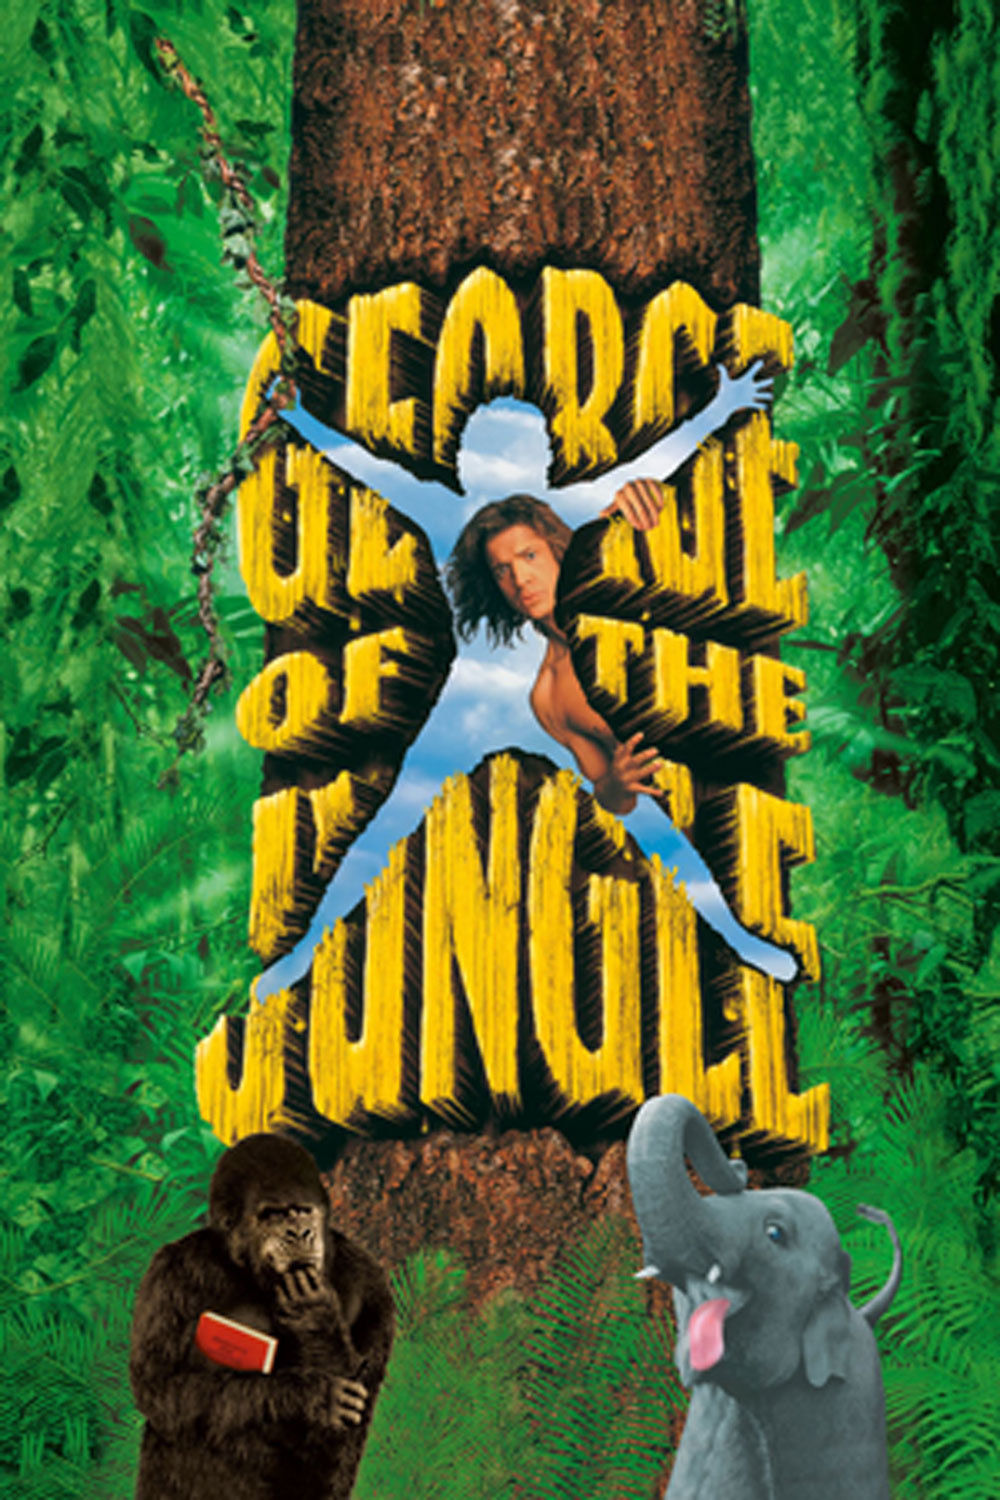 The Jungle #22